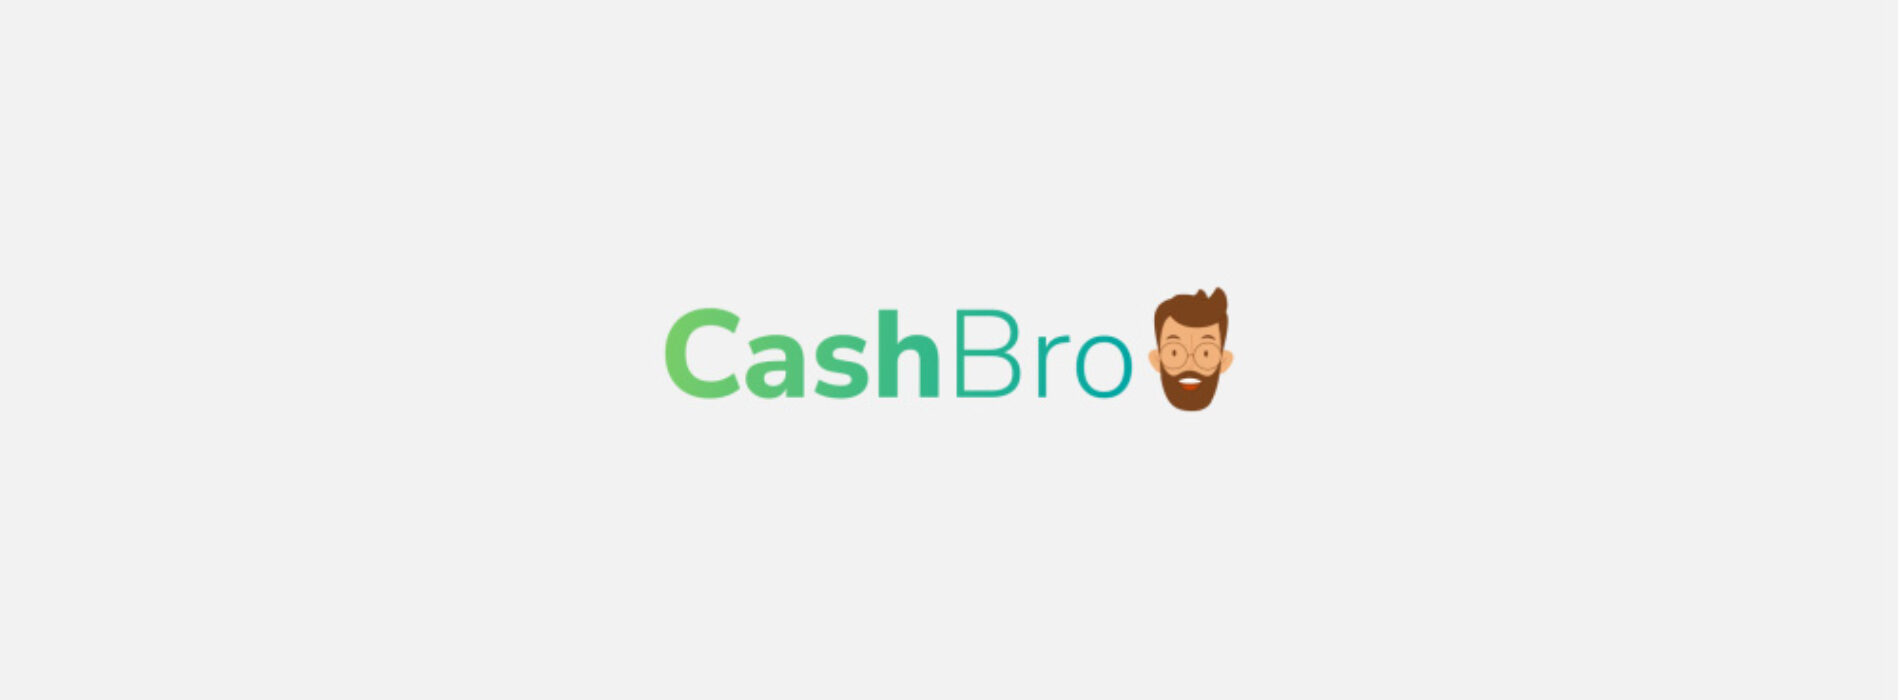 Cashbro — sprawdziliśmy ofertę i opinie klientów